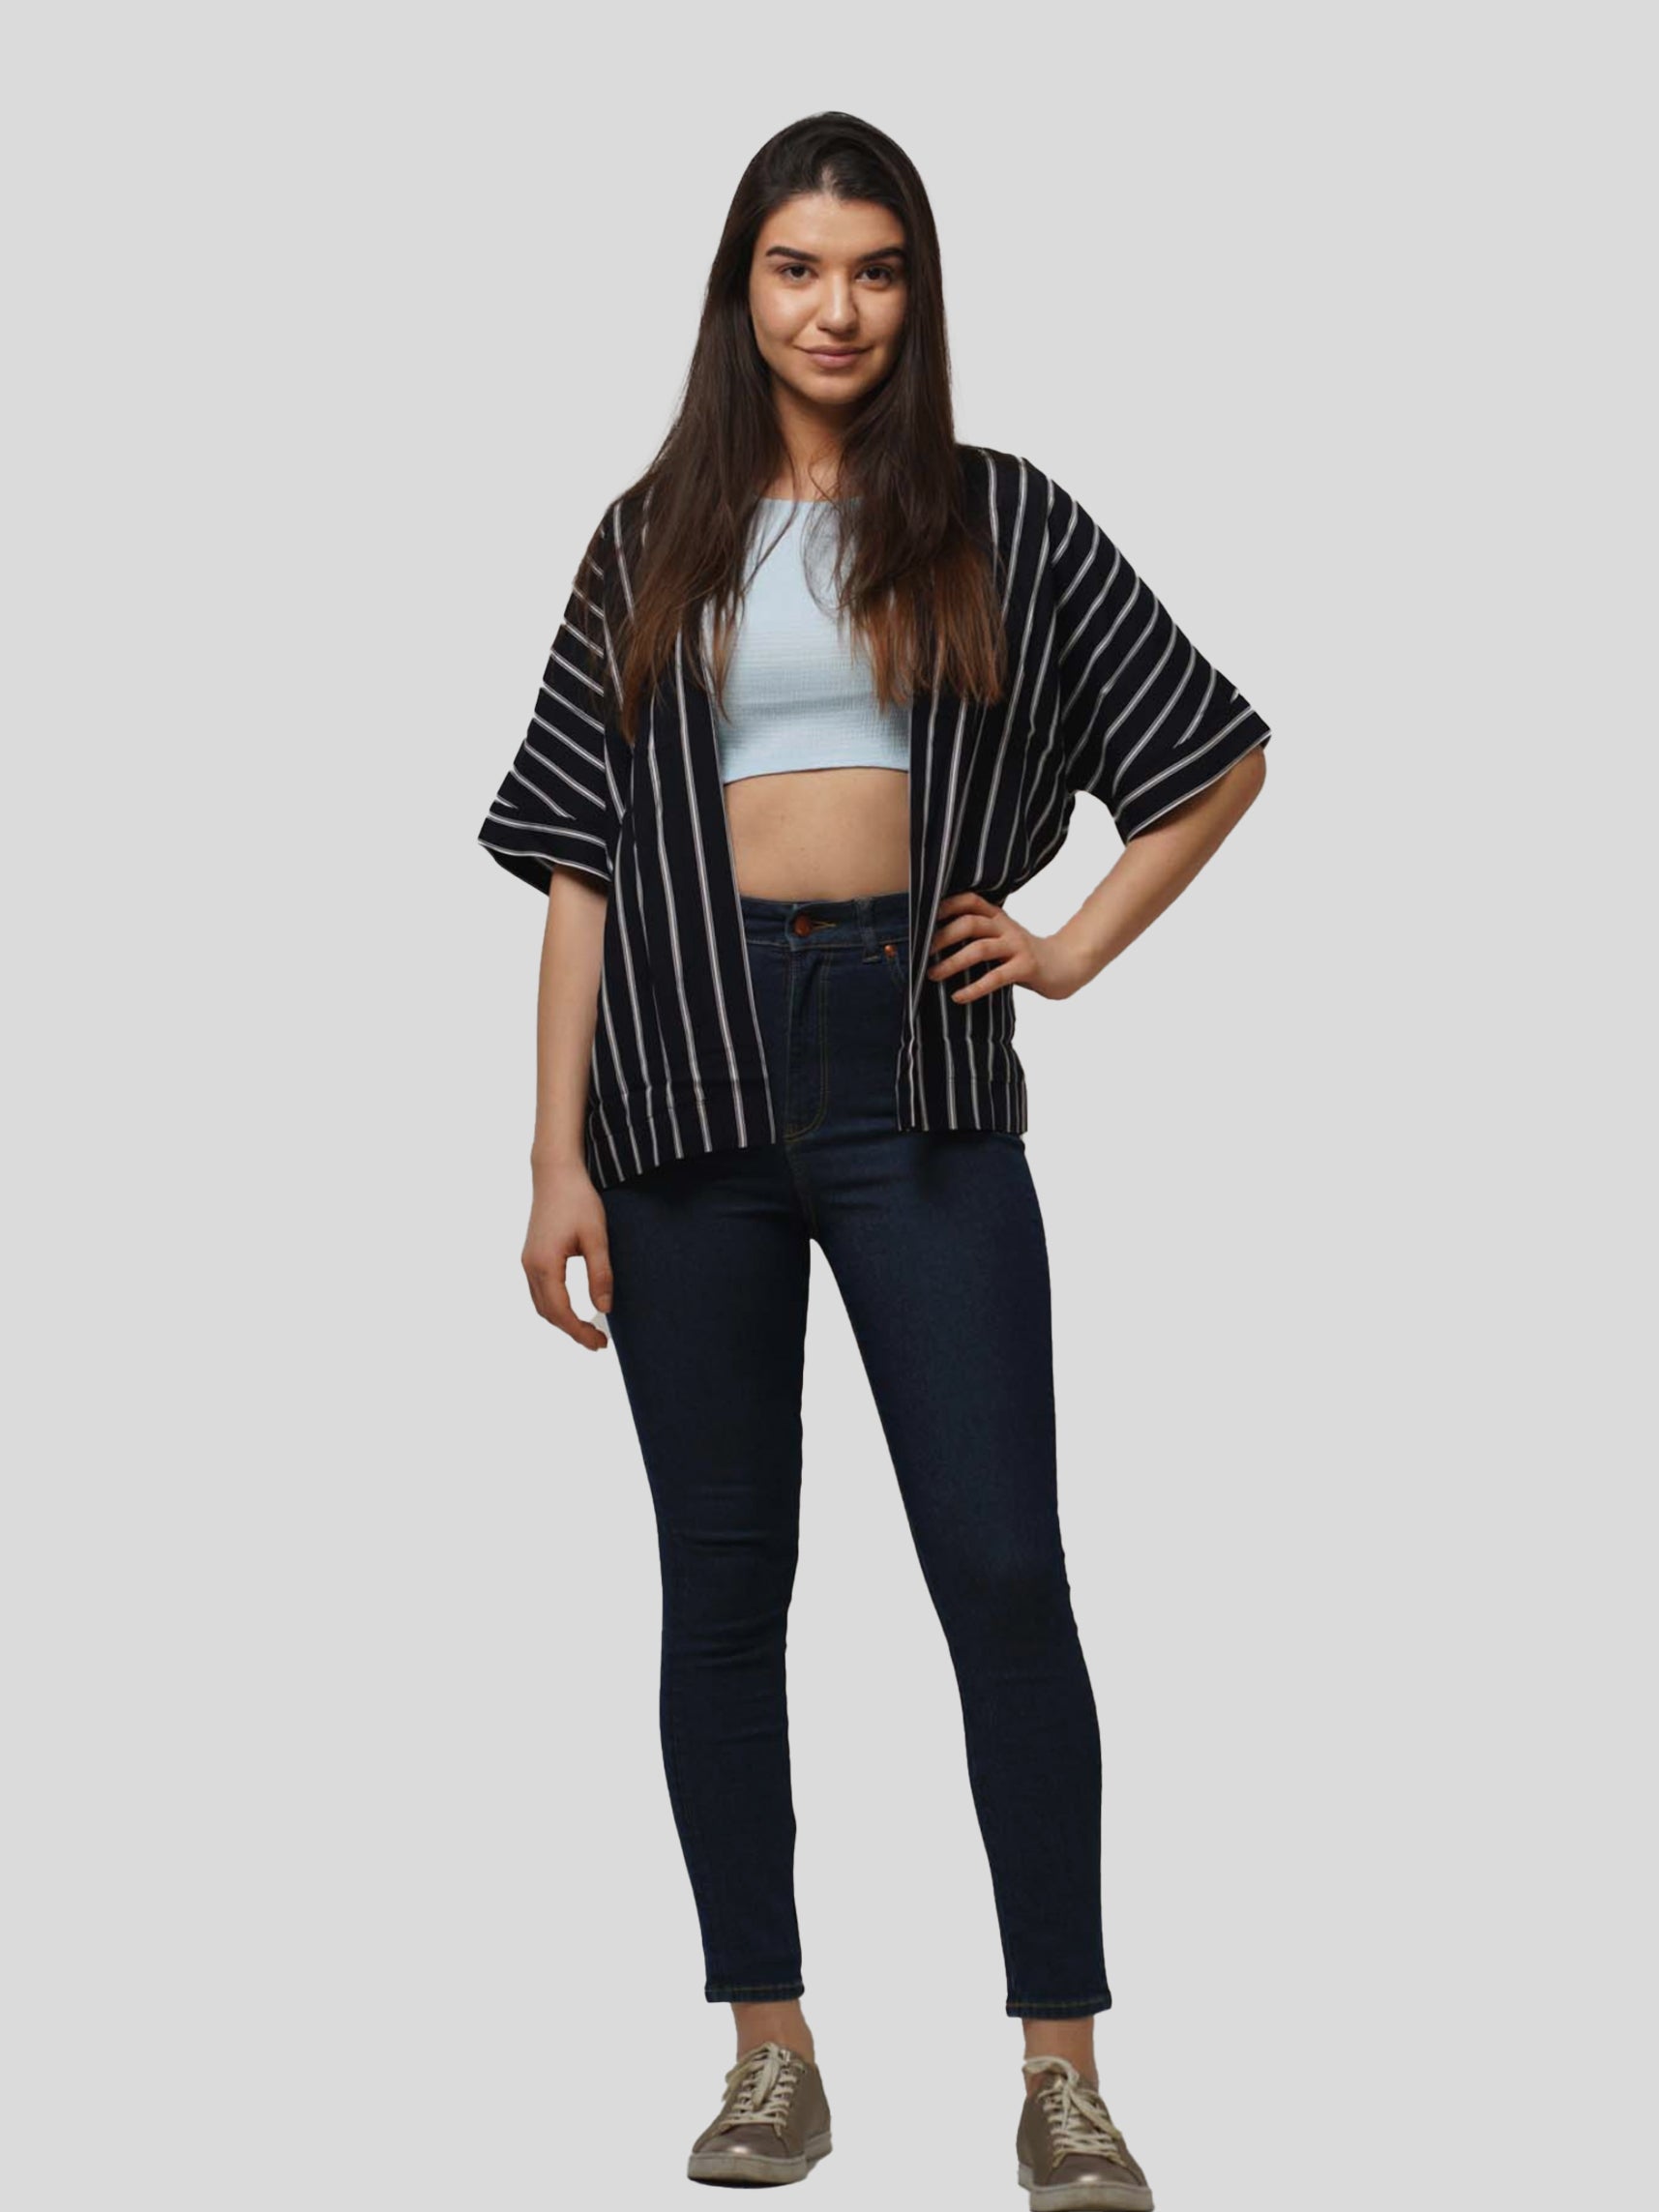 Womens Half Sleeve Tops Stripe Printed Loose Fit Western Style shrugs | Top only. - inteblu